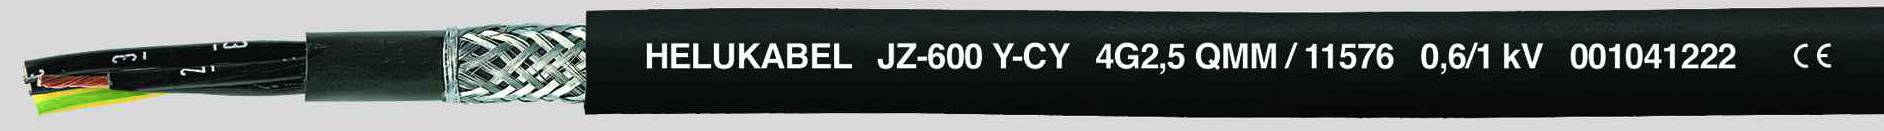 HELUKABEL JZ-600-Y-CY Steuerleitung 4 G 1.50 mm² Schwarz 11548-1000 1000 m